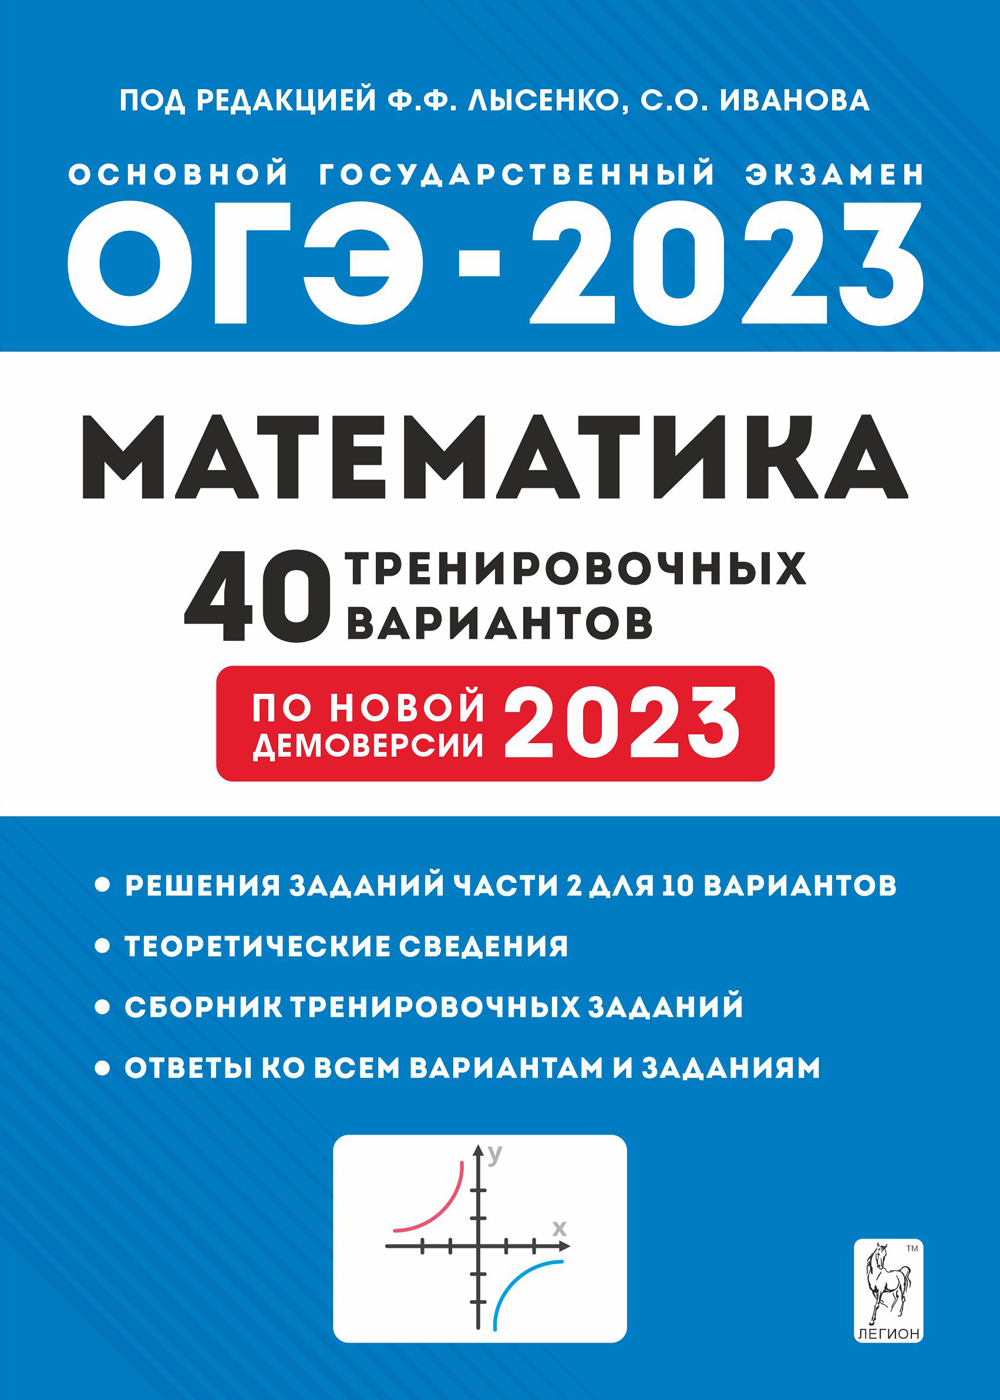 ОГЭ-2023. Математика. Подготовка к ОГЭ. 40 тренировочных вариантов по демоверсии 2023 года